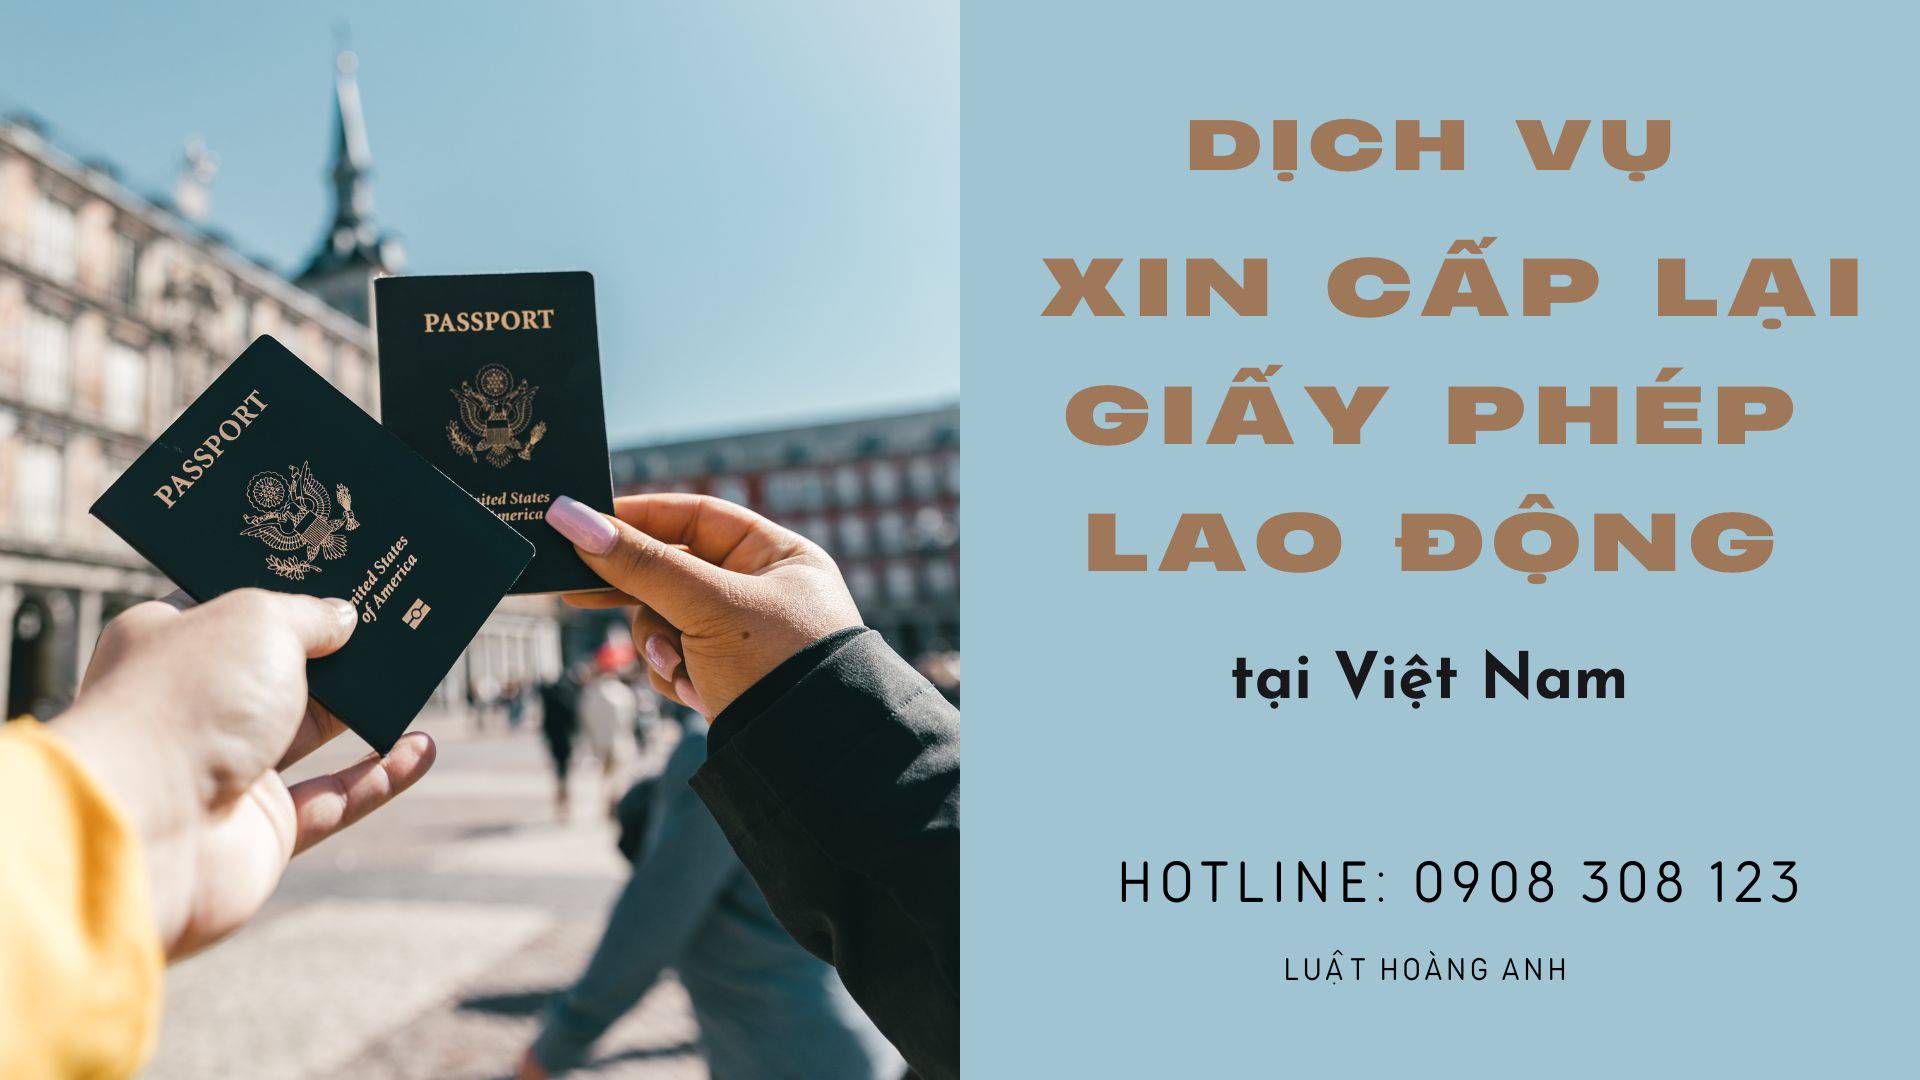 Dịch vụ xin cấp lại Giấy phép lao động cho người nước ngoài tại Việt Nam